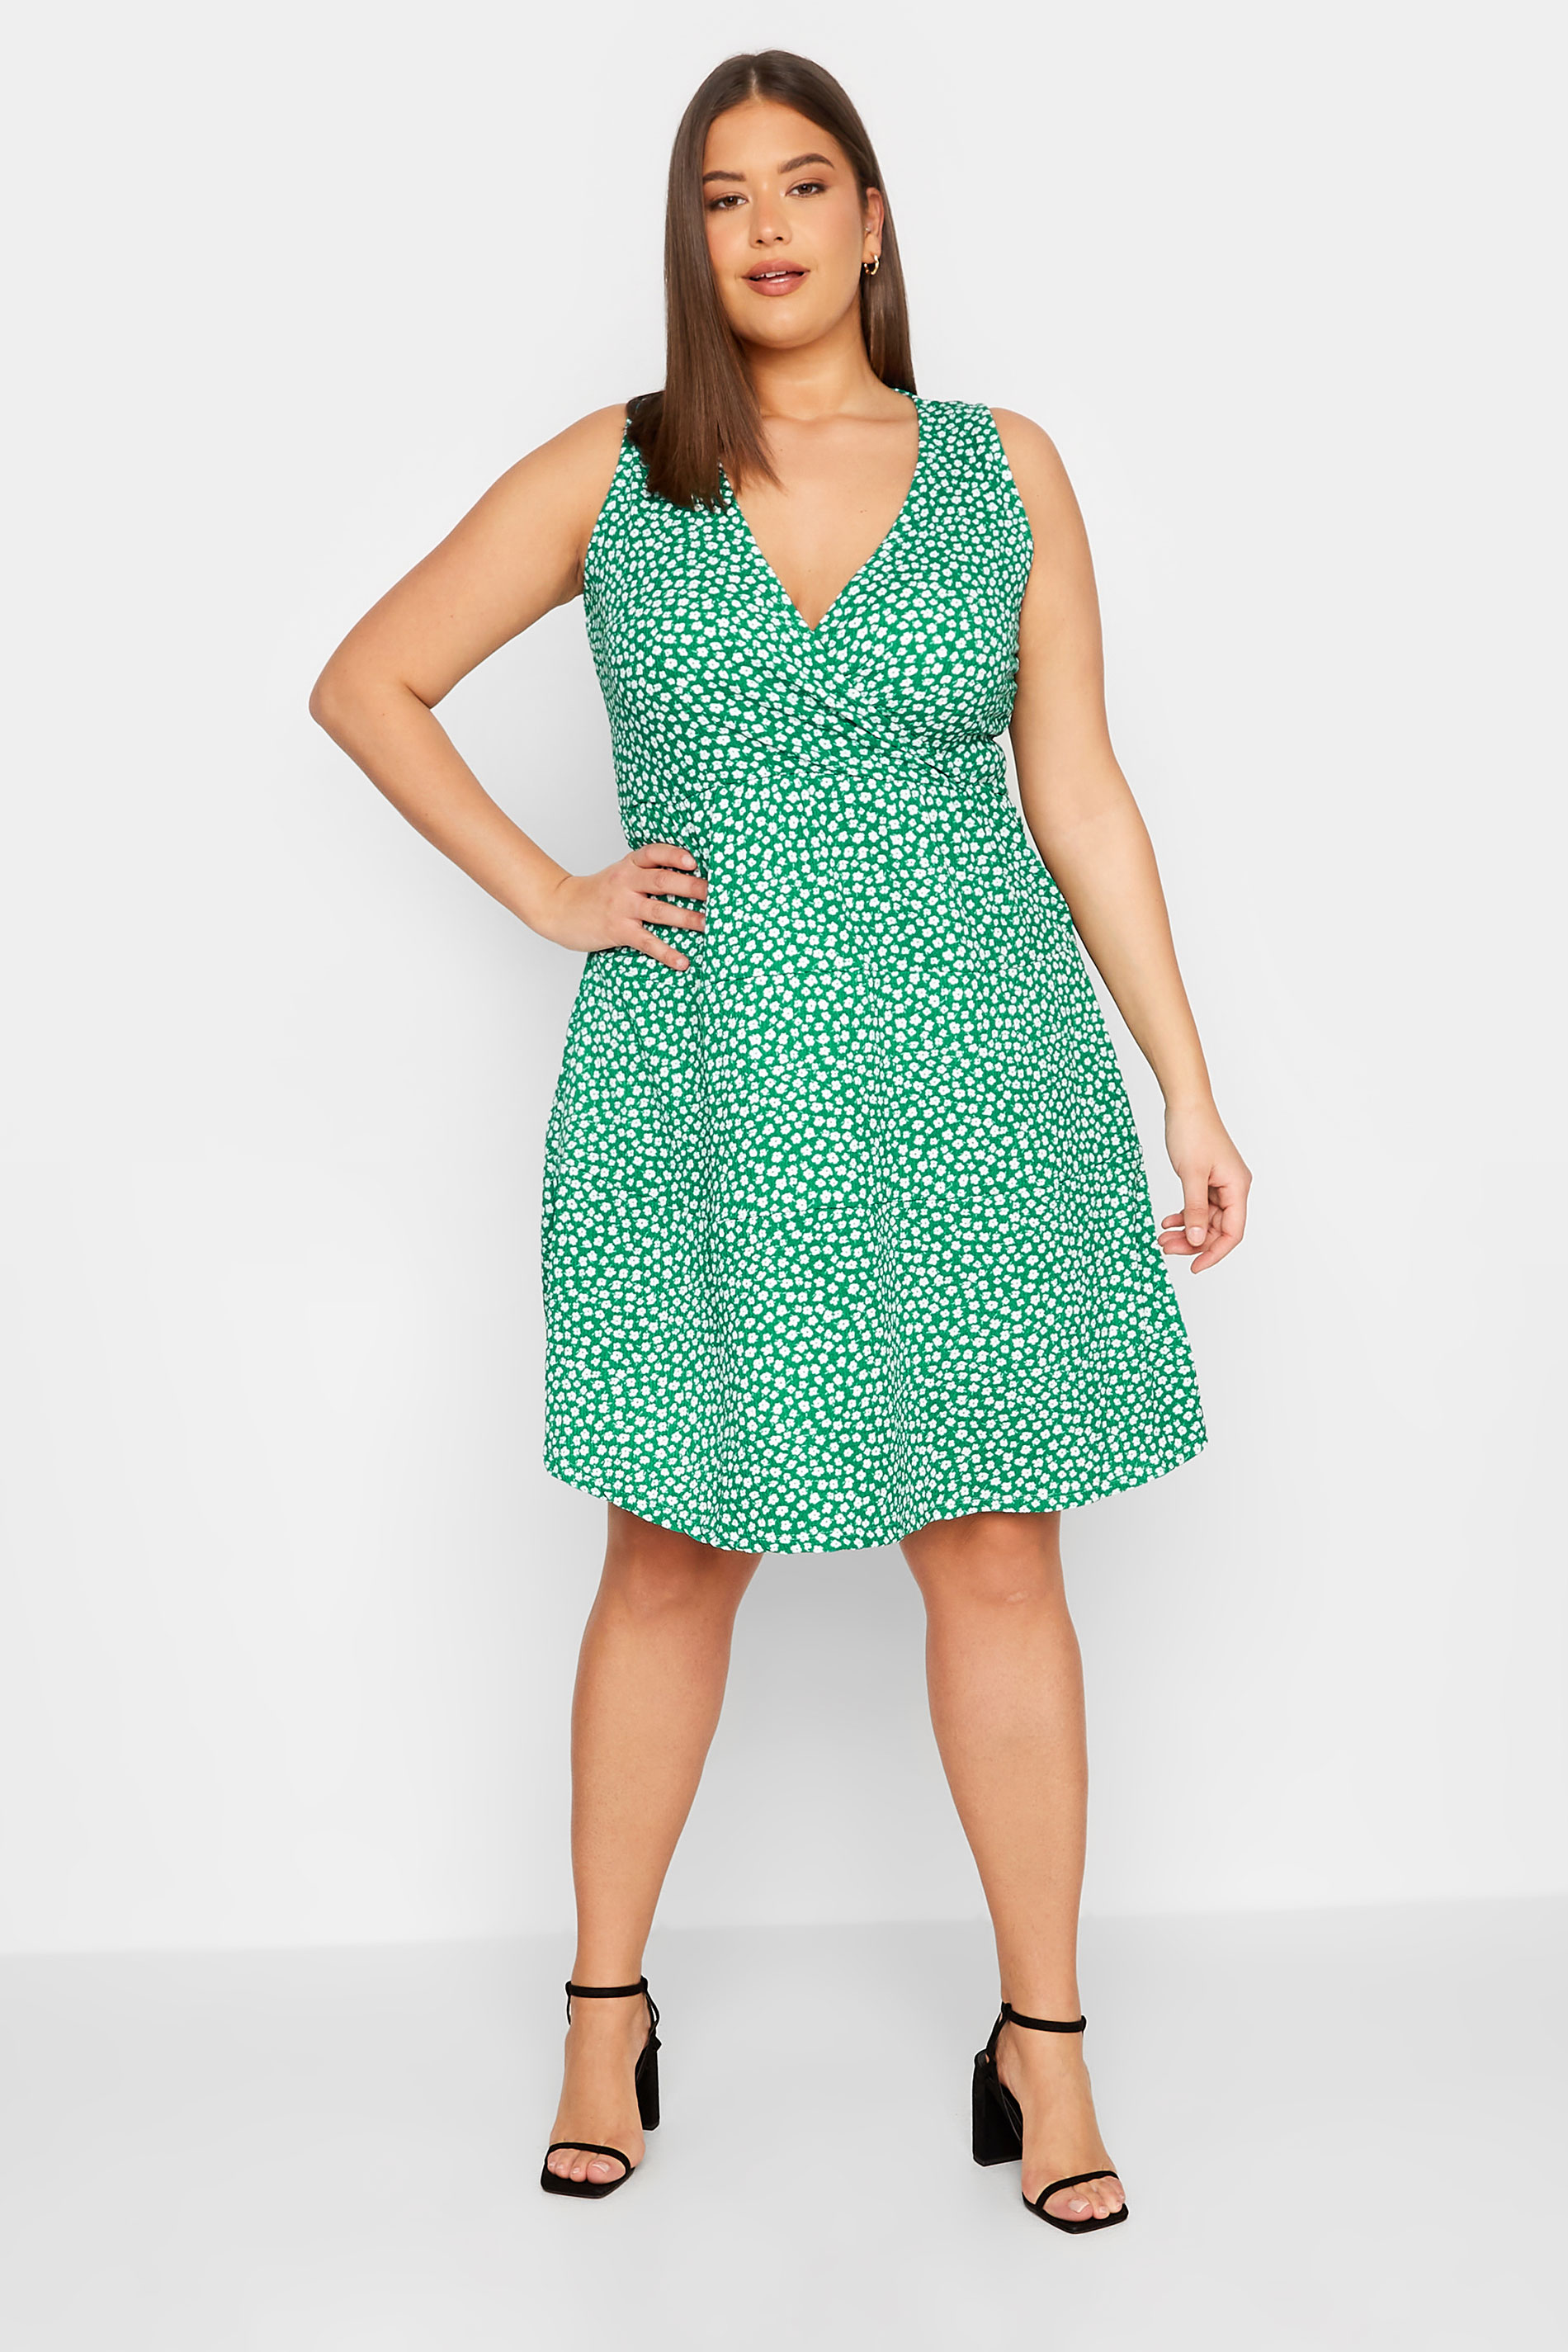 LTS Tall Green Ditsy Print Mini Dress | Long Tall Sally  2